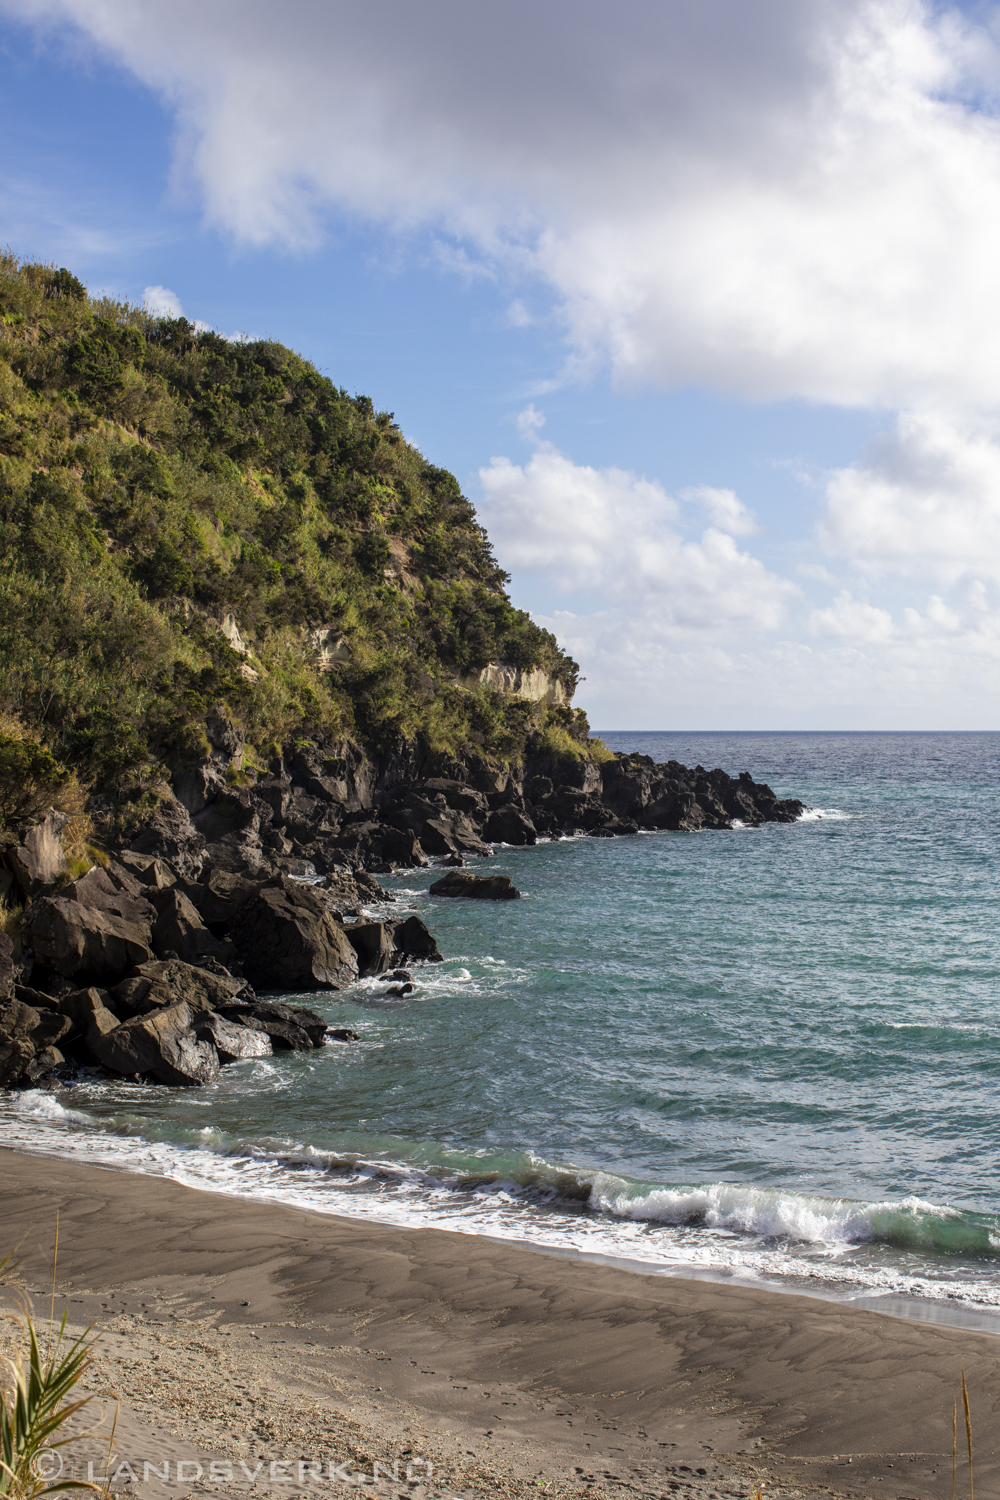 Praia da Pedreira. São Miguel, Azores. (Canon EOS 5D Mark IV / Canon EF 50mm f/1.2 L USM)